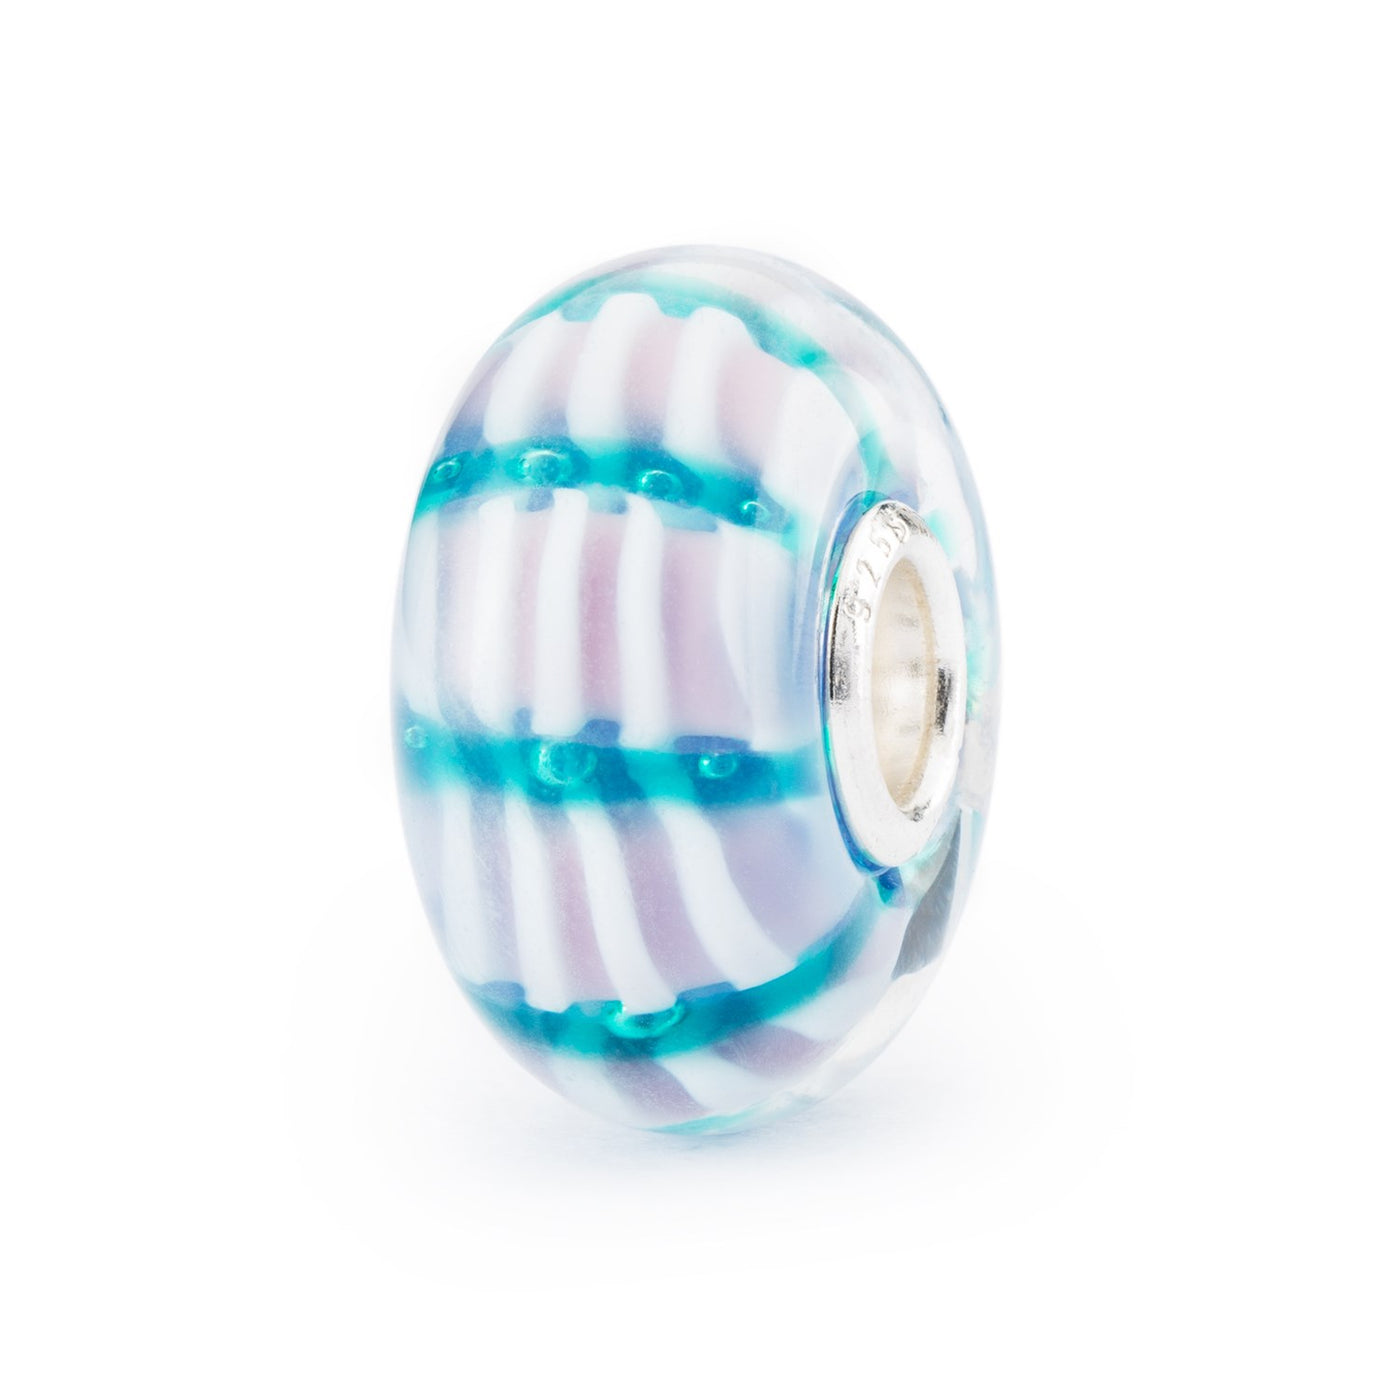 En charmerende glaskugle med blå bånd med knopper, der strækker sig hen over striber i hvidt og lyselilla indeni.